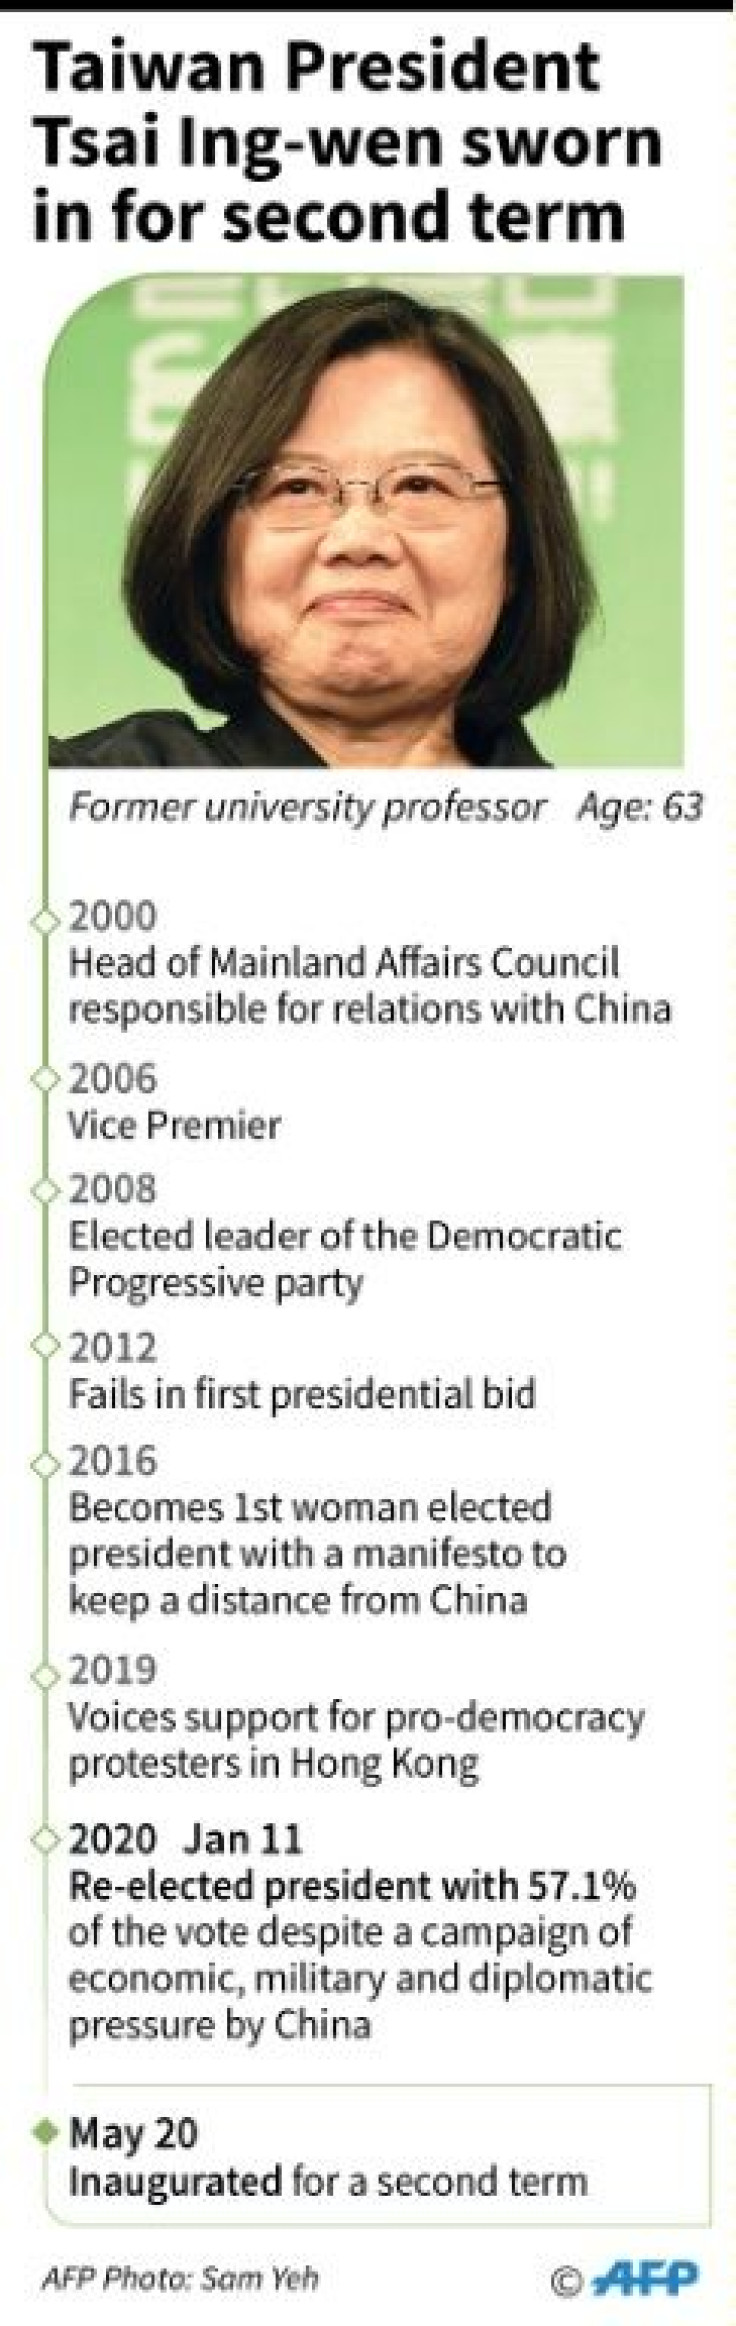 Profile of Tsai Ing-wen